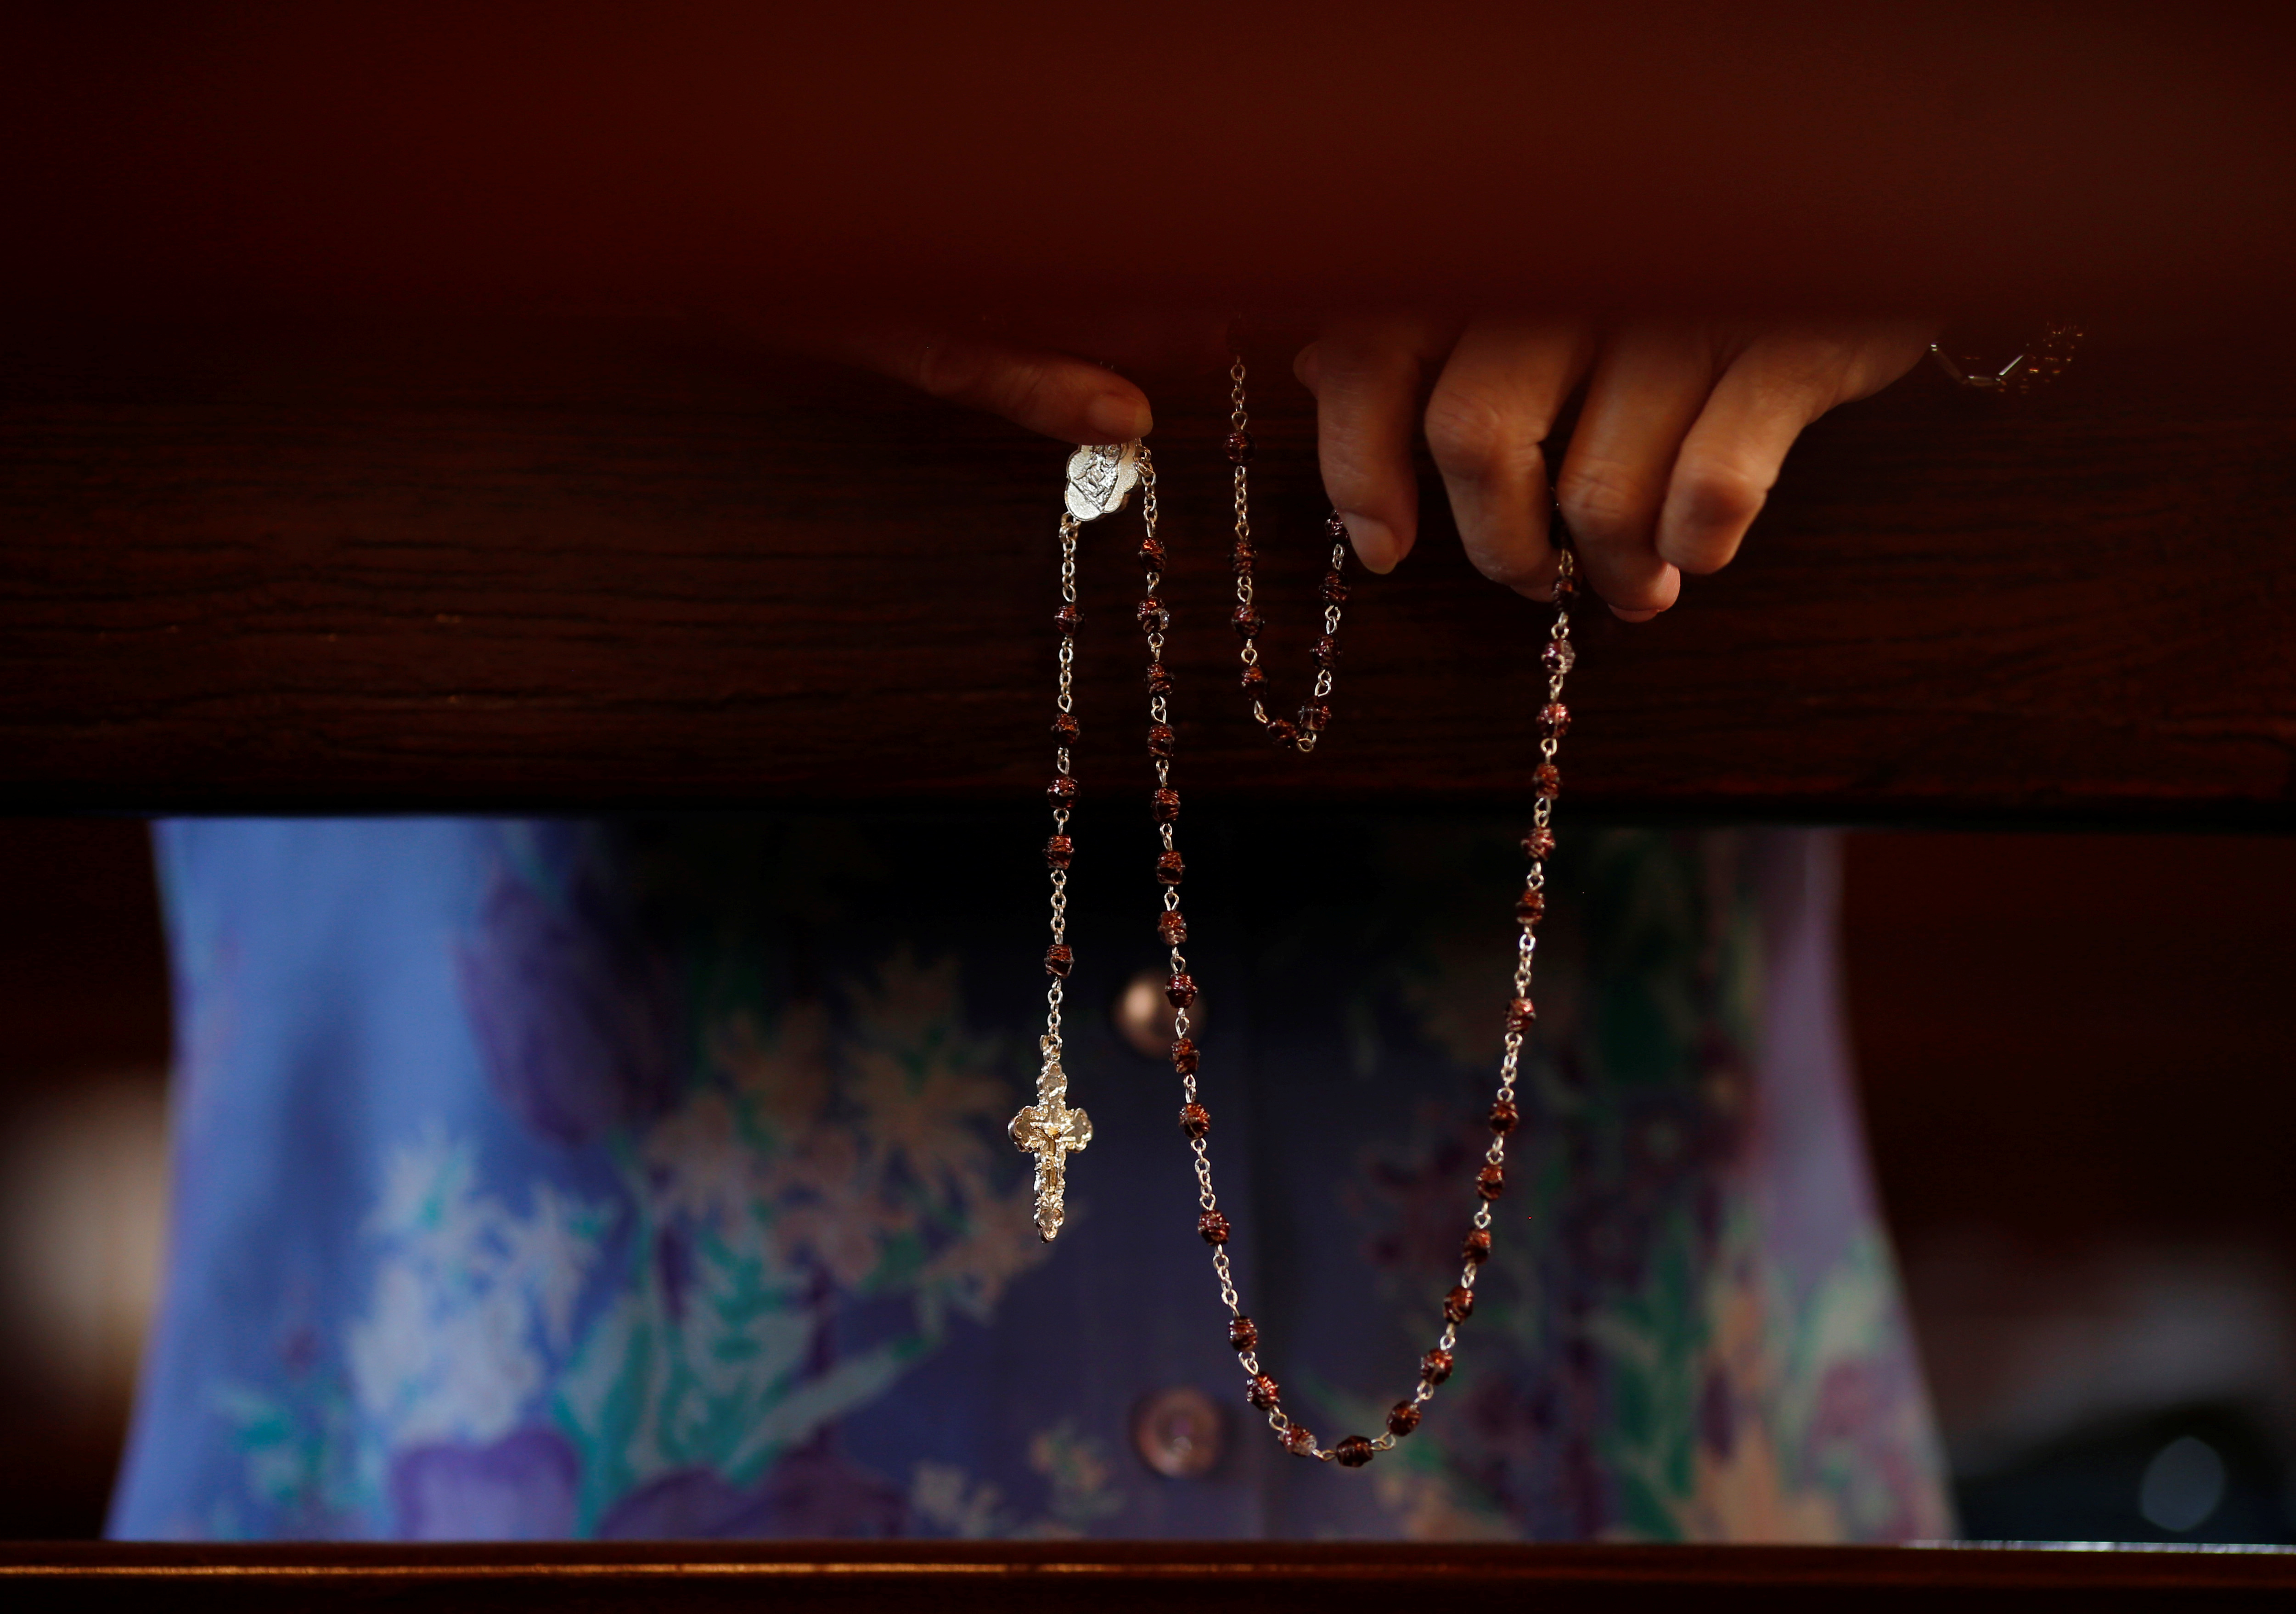 Mil denuncias en cuatro países abren en Latinoamérica una “tercera oleada” de abusos en la Iglesia